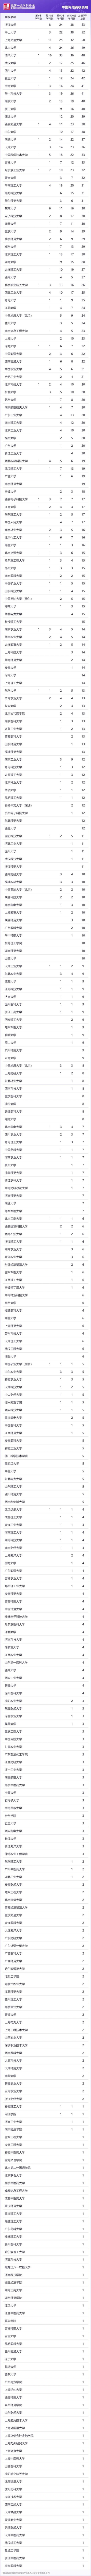 最新排名公布！上海3个学科排名全球第一、16个学科跻身前十